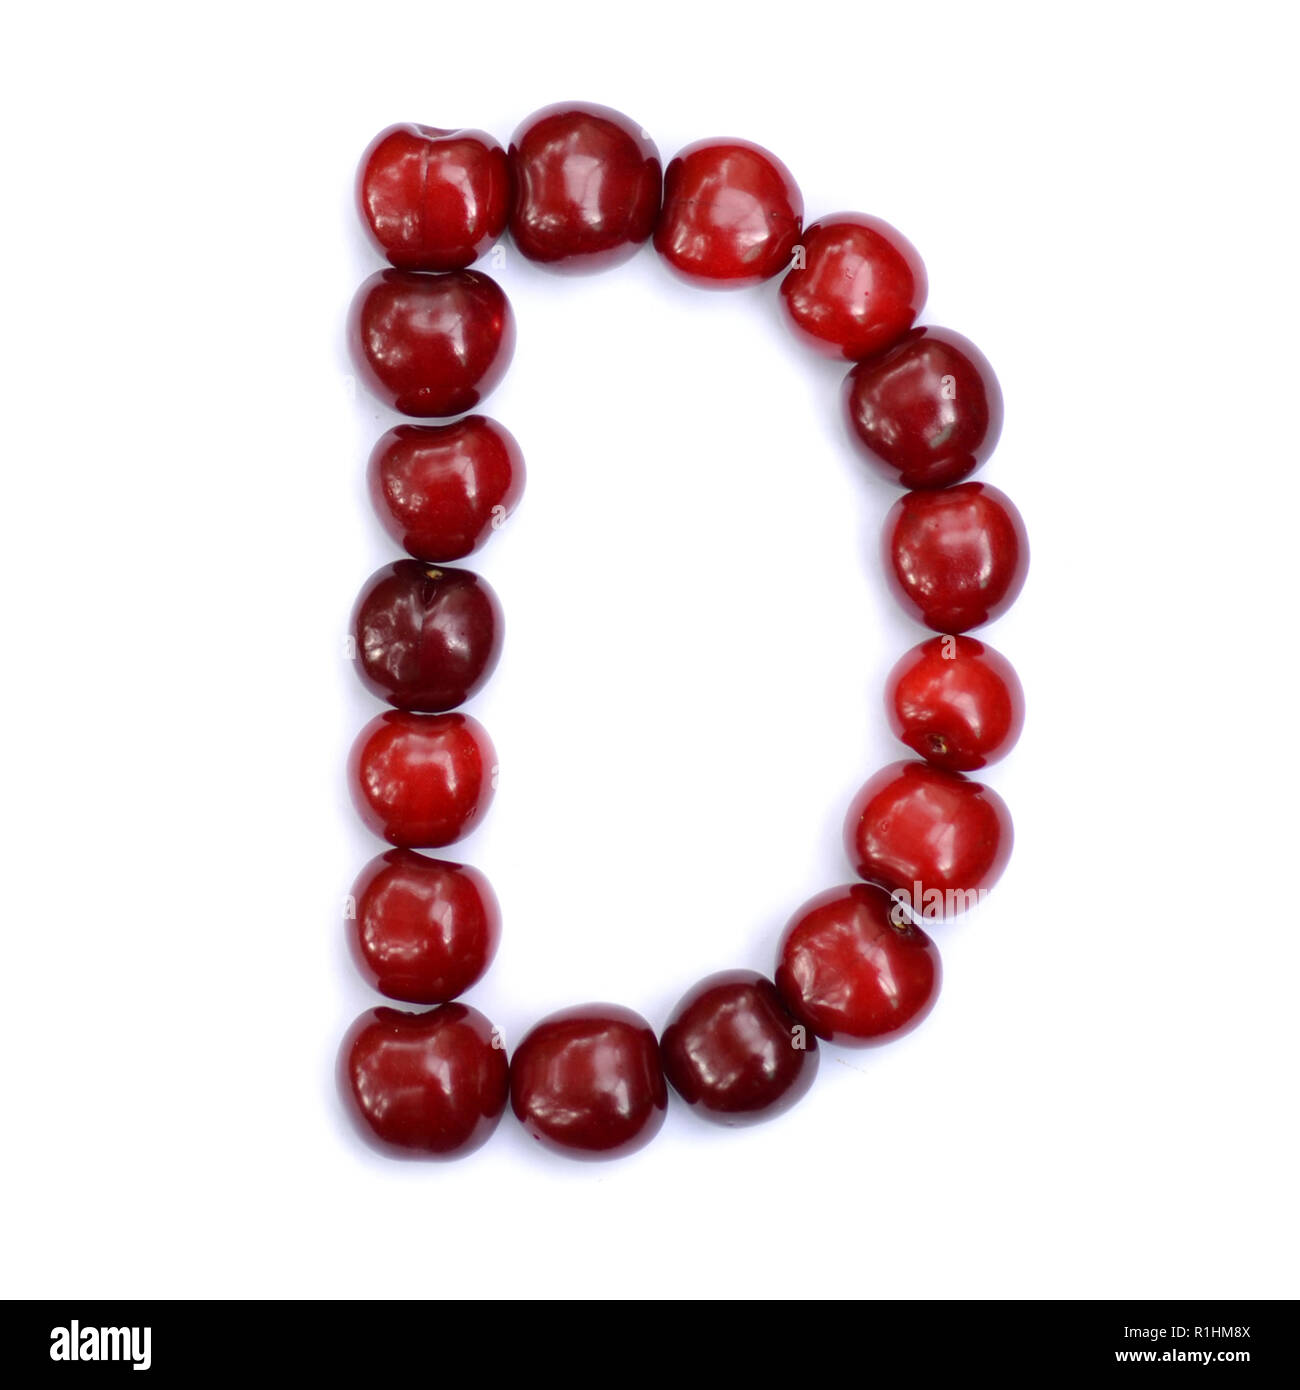 Buchstabe D mit Kirschen einen Buchstaben des Alphabets zu bilden. Berry Buchstaben auf weißem Hintergrund. Stockfoto